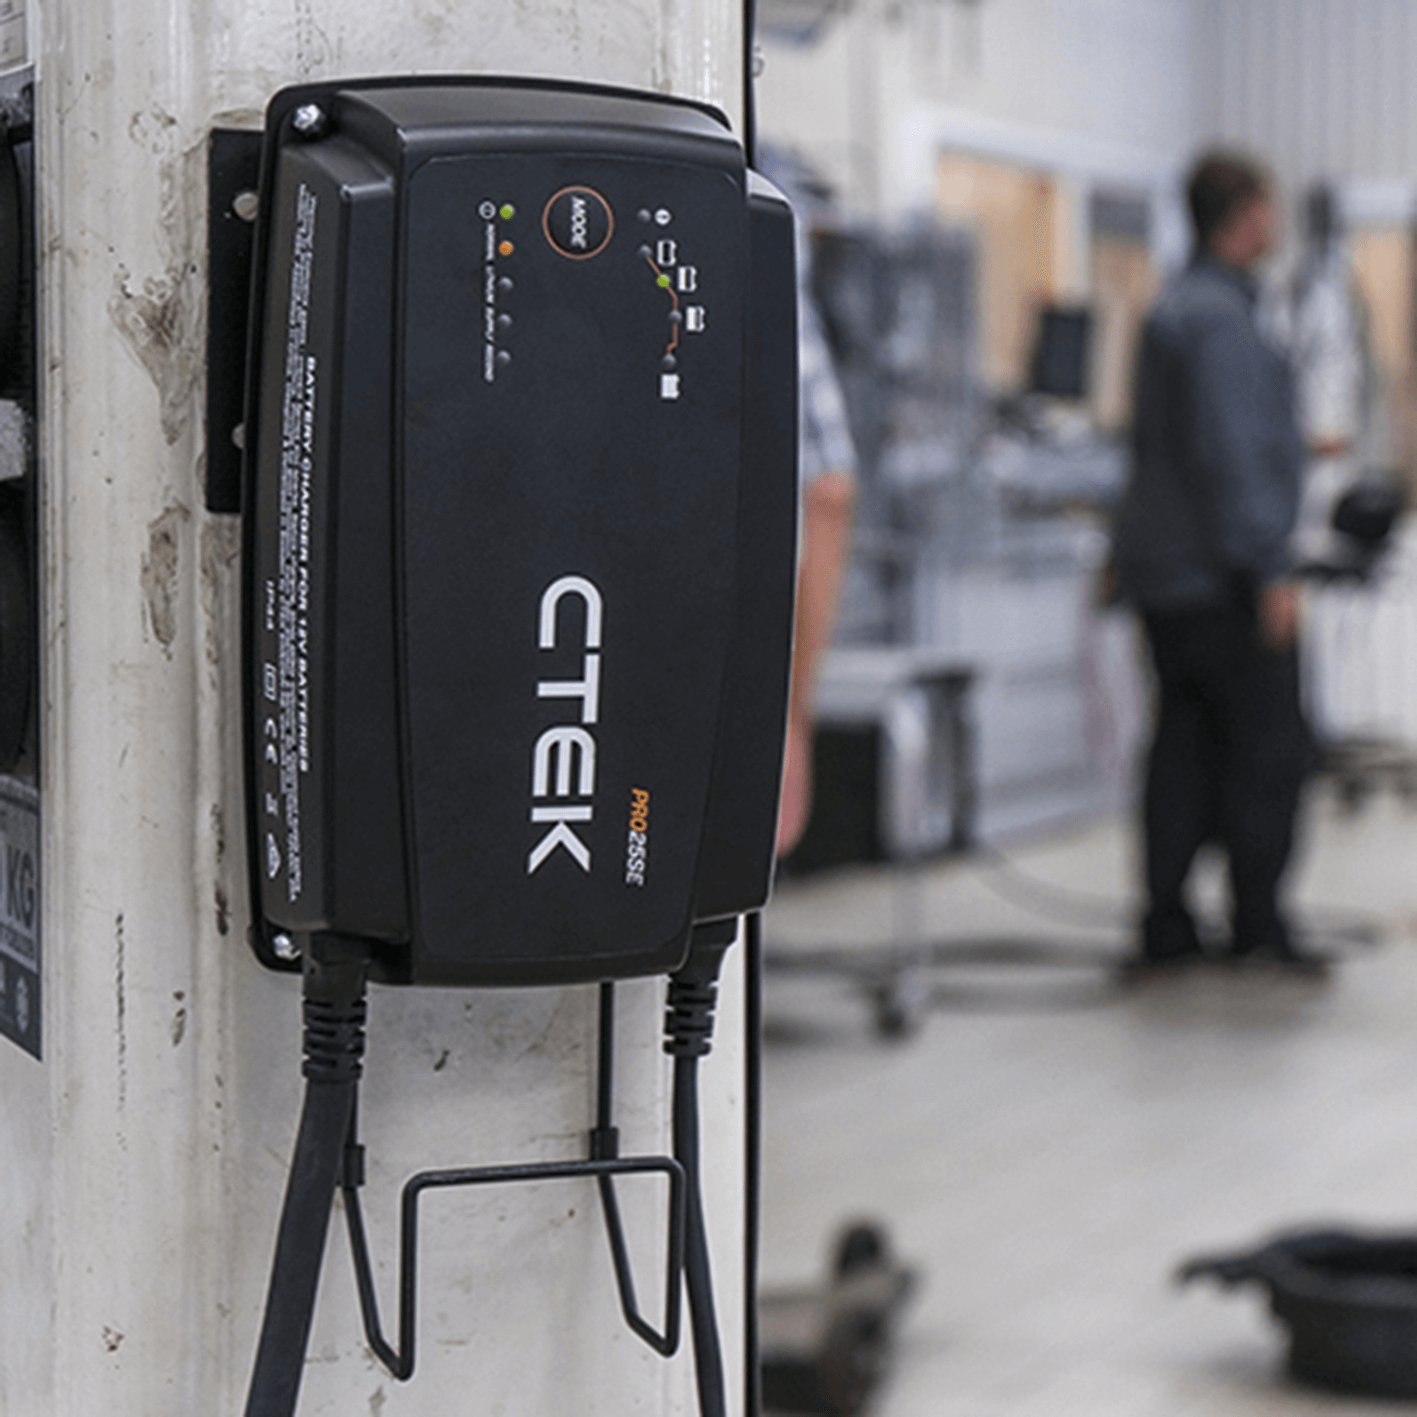 CTEK PRO25S 12V Lade und Erhaltungs Gerät auch für Lithium Batterien - CTEK  Batt